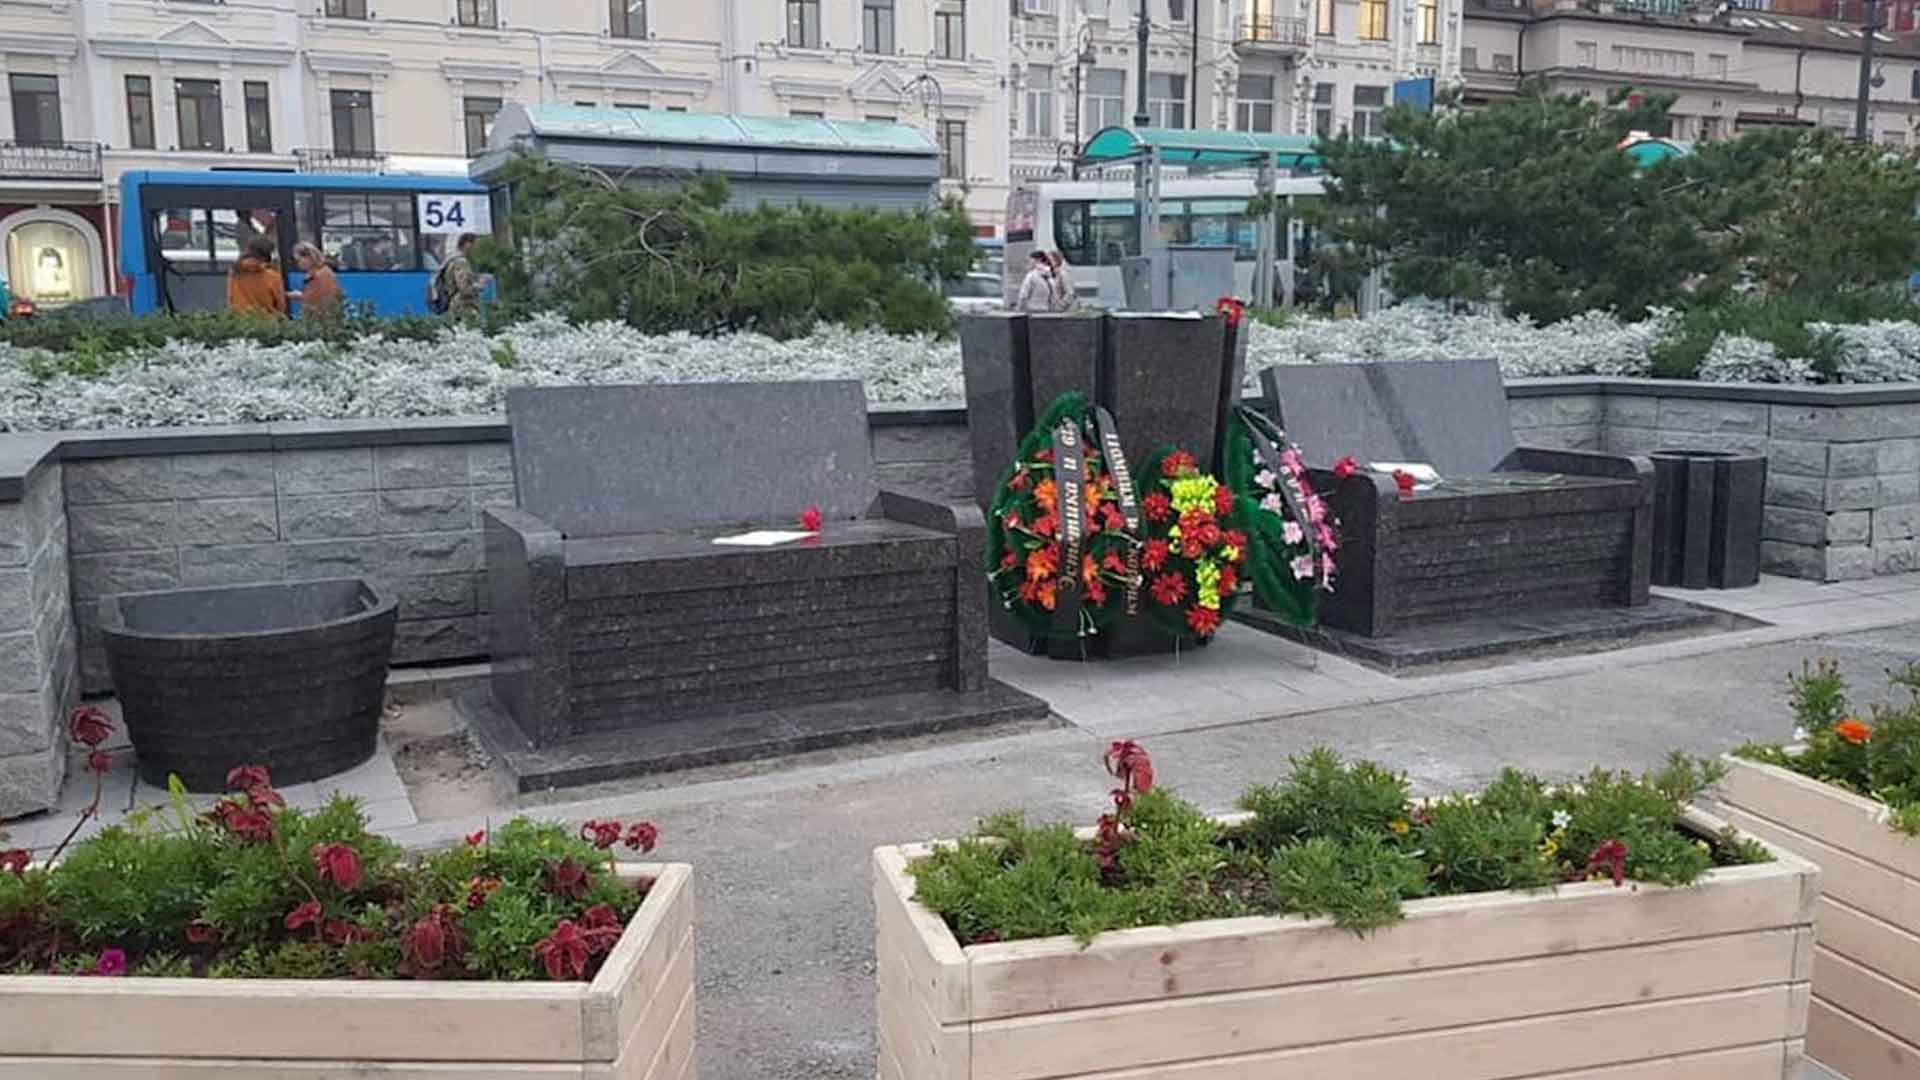 Ответственные за установку гранитных скамеек в городском сквере будут наказаны, отметили в правительстве края Фото: © vl.ru